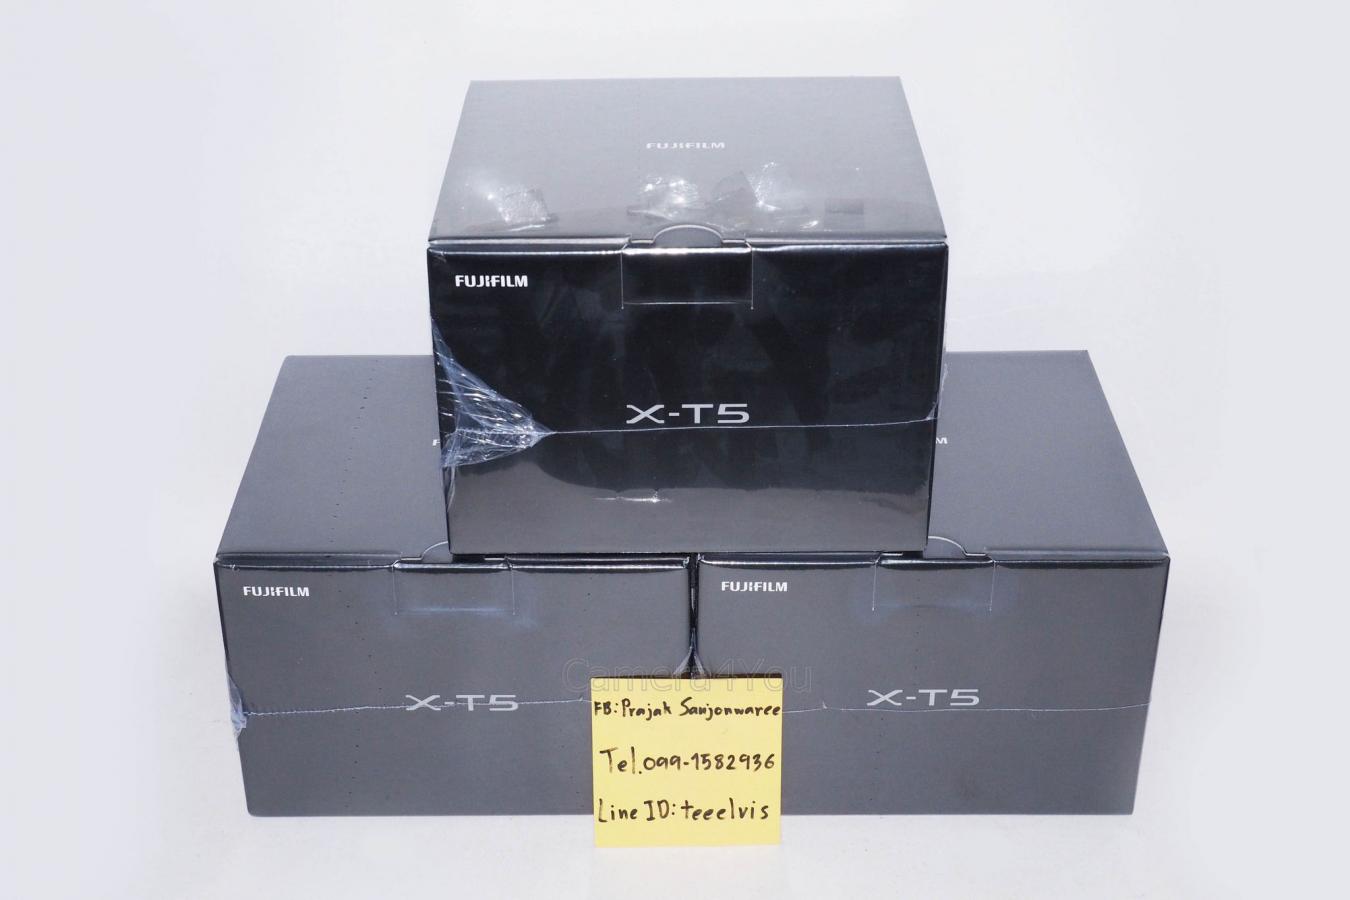 ขาย Body กล้อง Fuji XT-5 (สีดำ) ของใหม่ ยังไม่ผ่านการใช้งาน มีประกันศูนย์ไทย 1 ปี